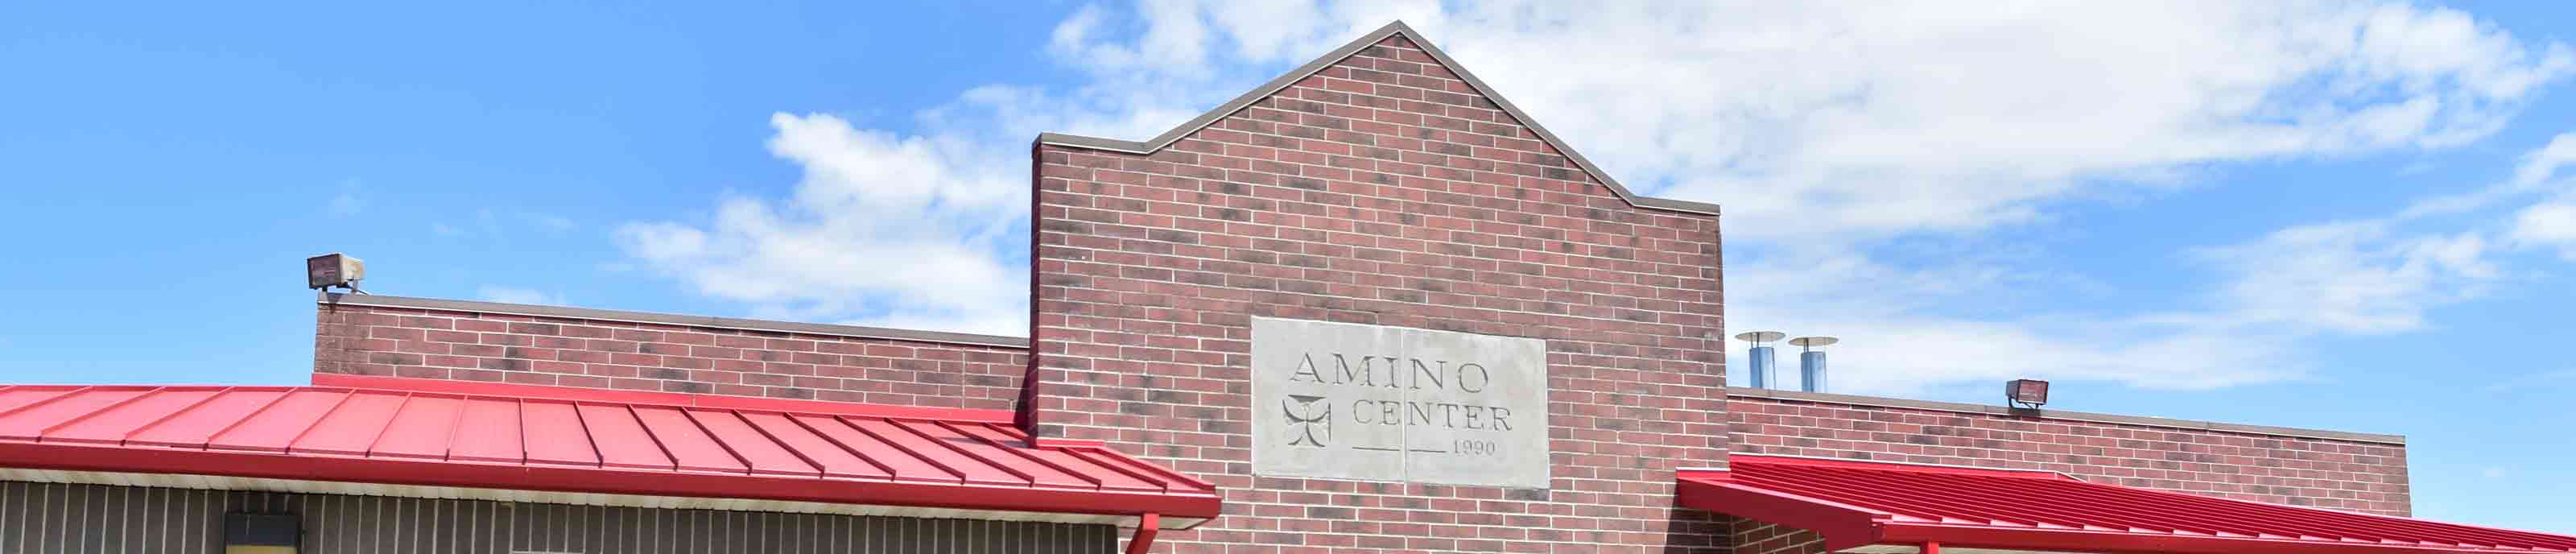 Amino Center